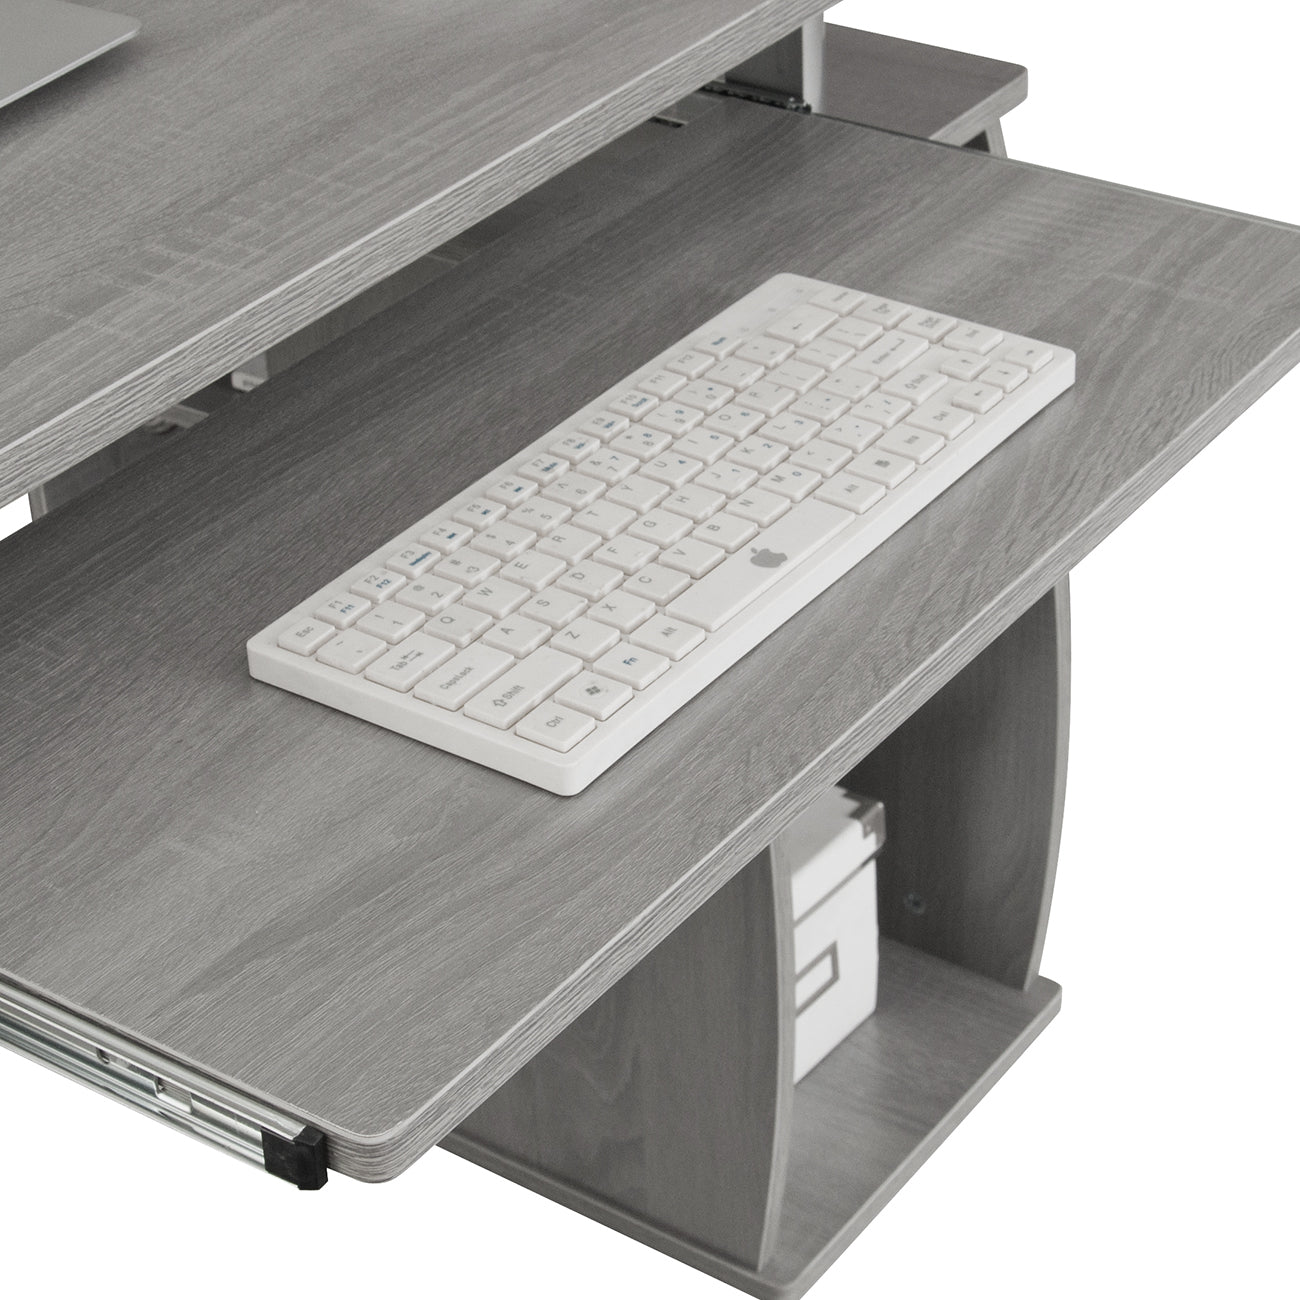 Complete Computer Workstation Desk, Grey